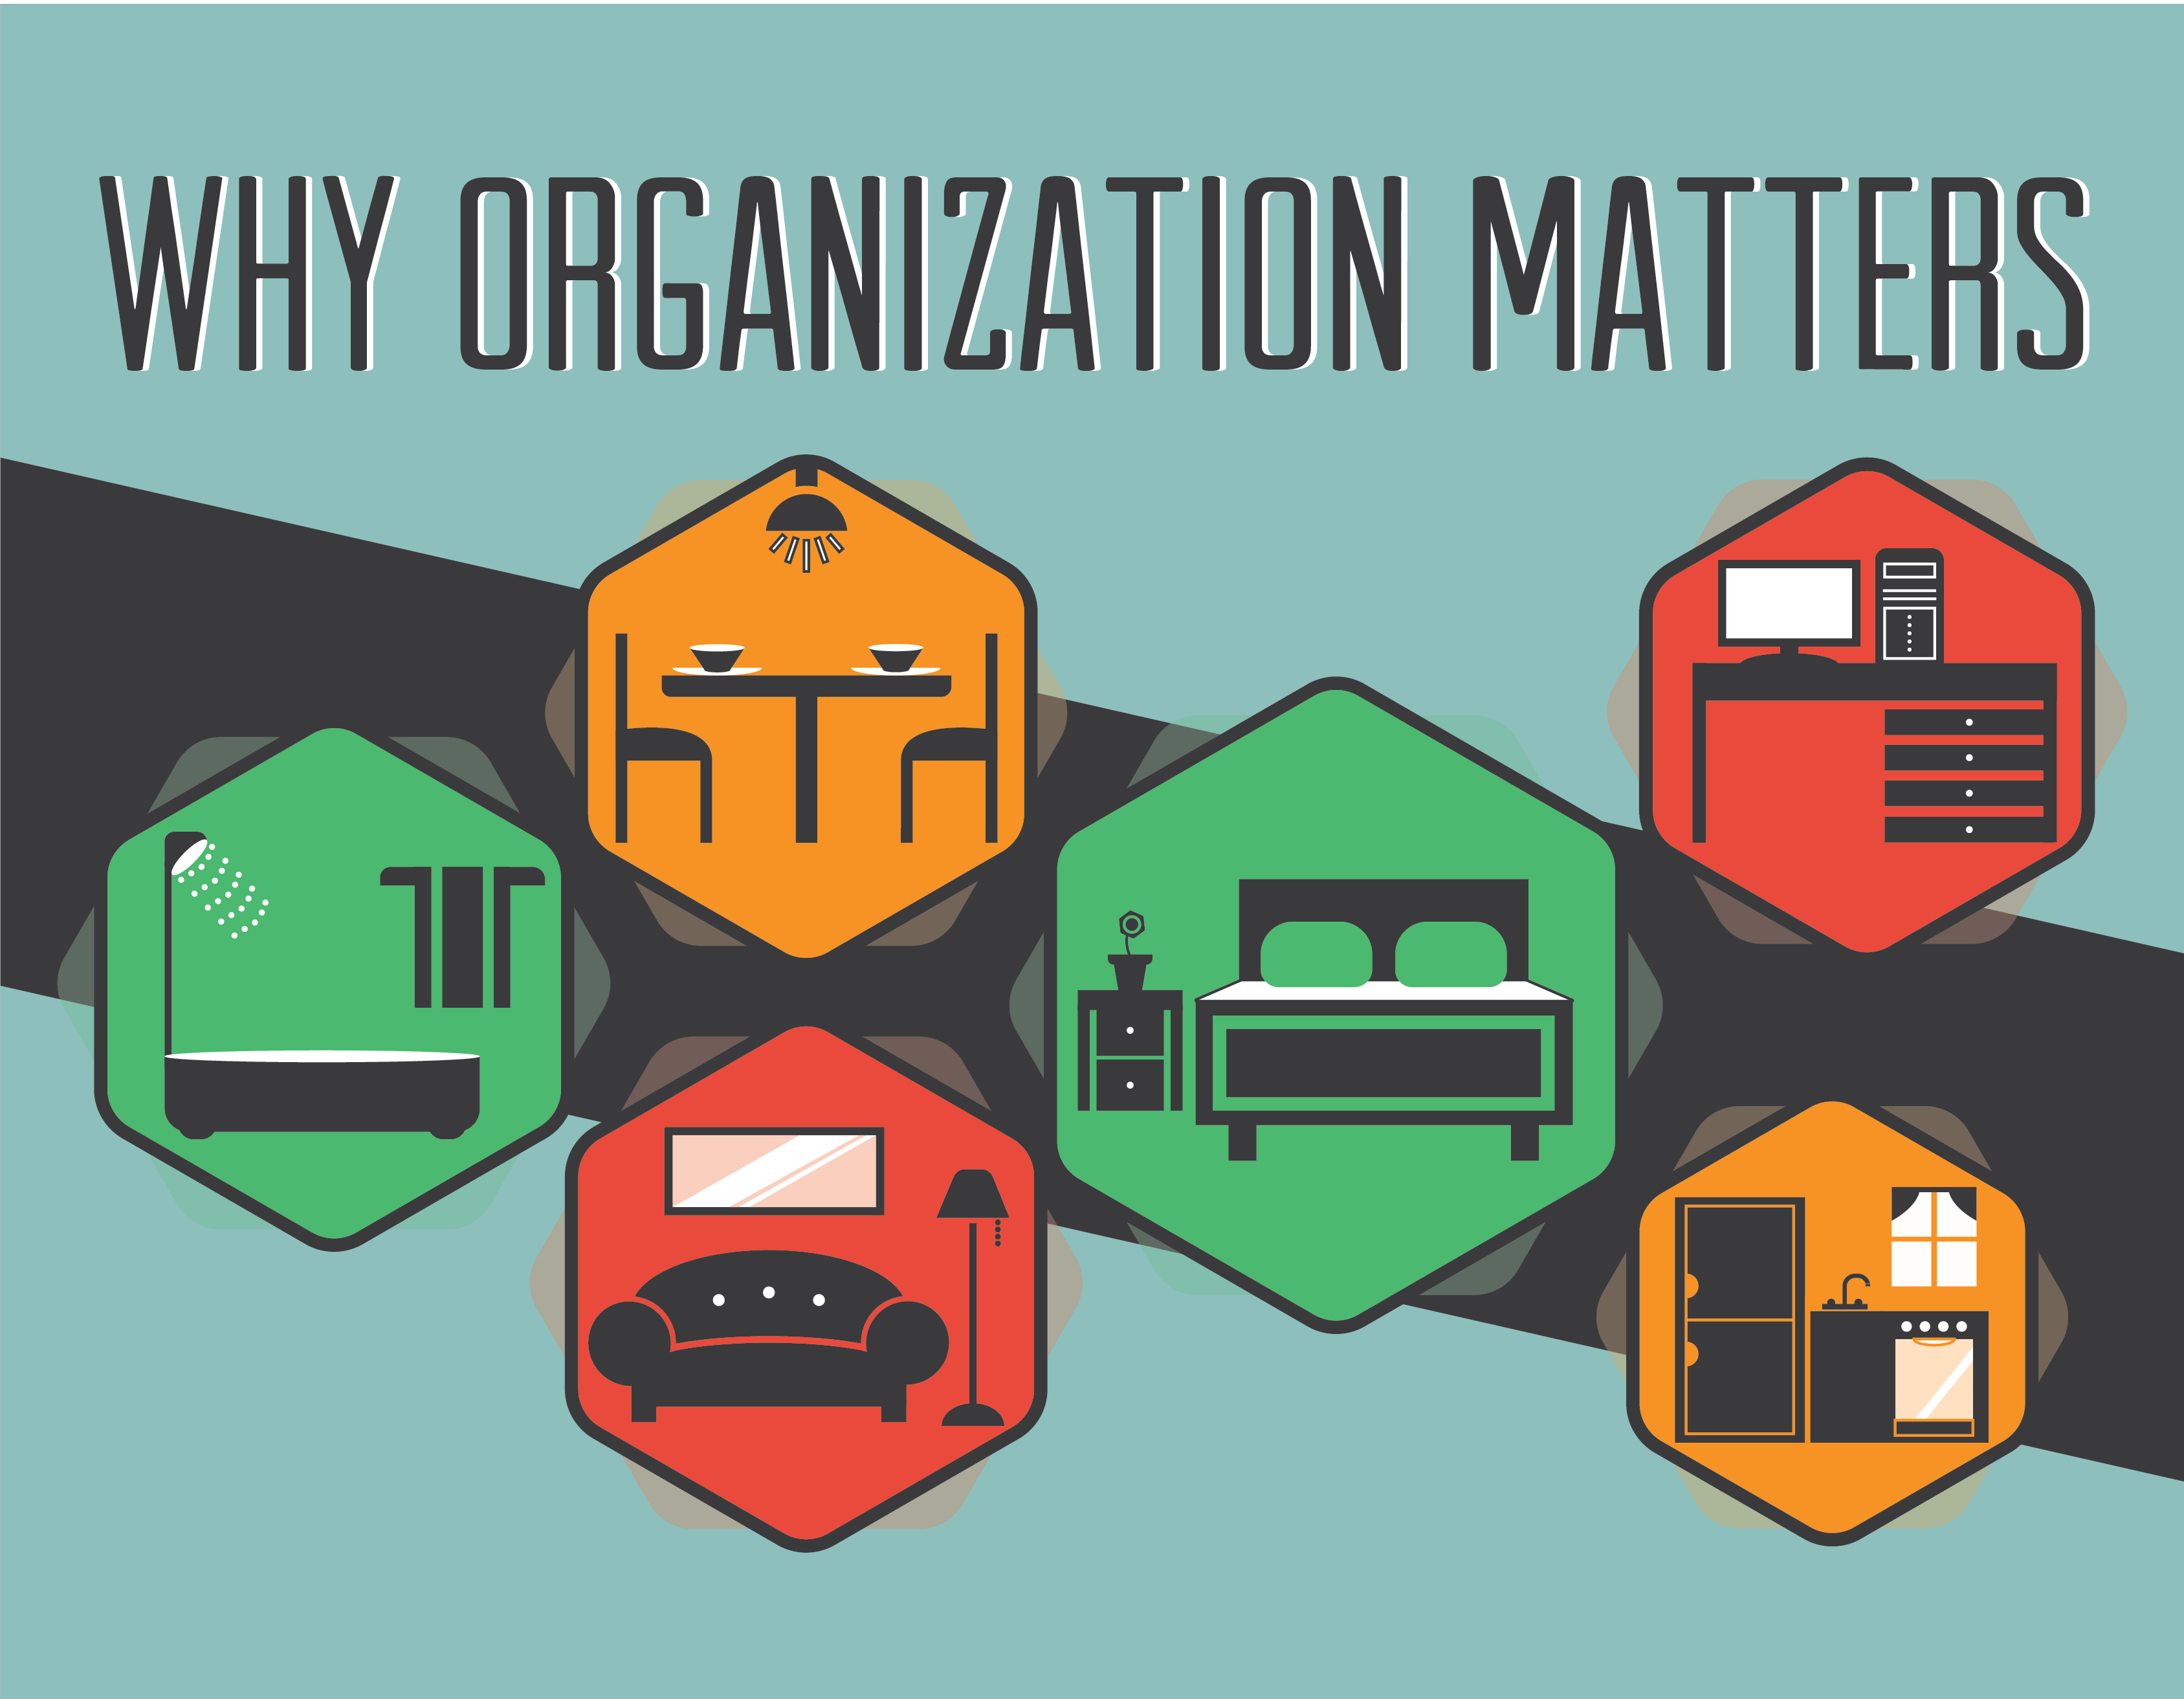 Organization matters